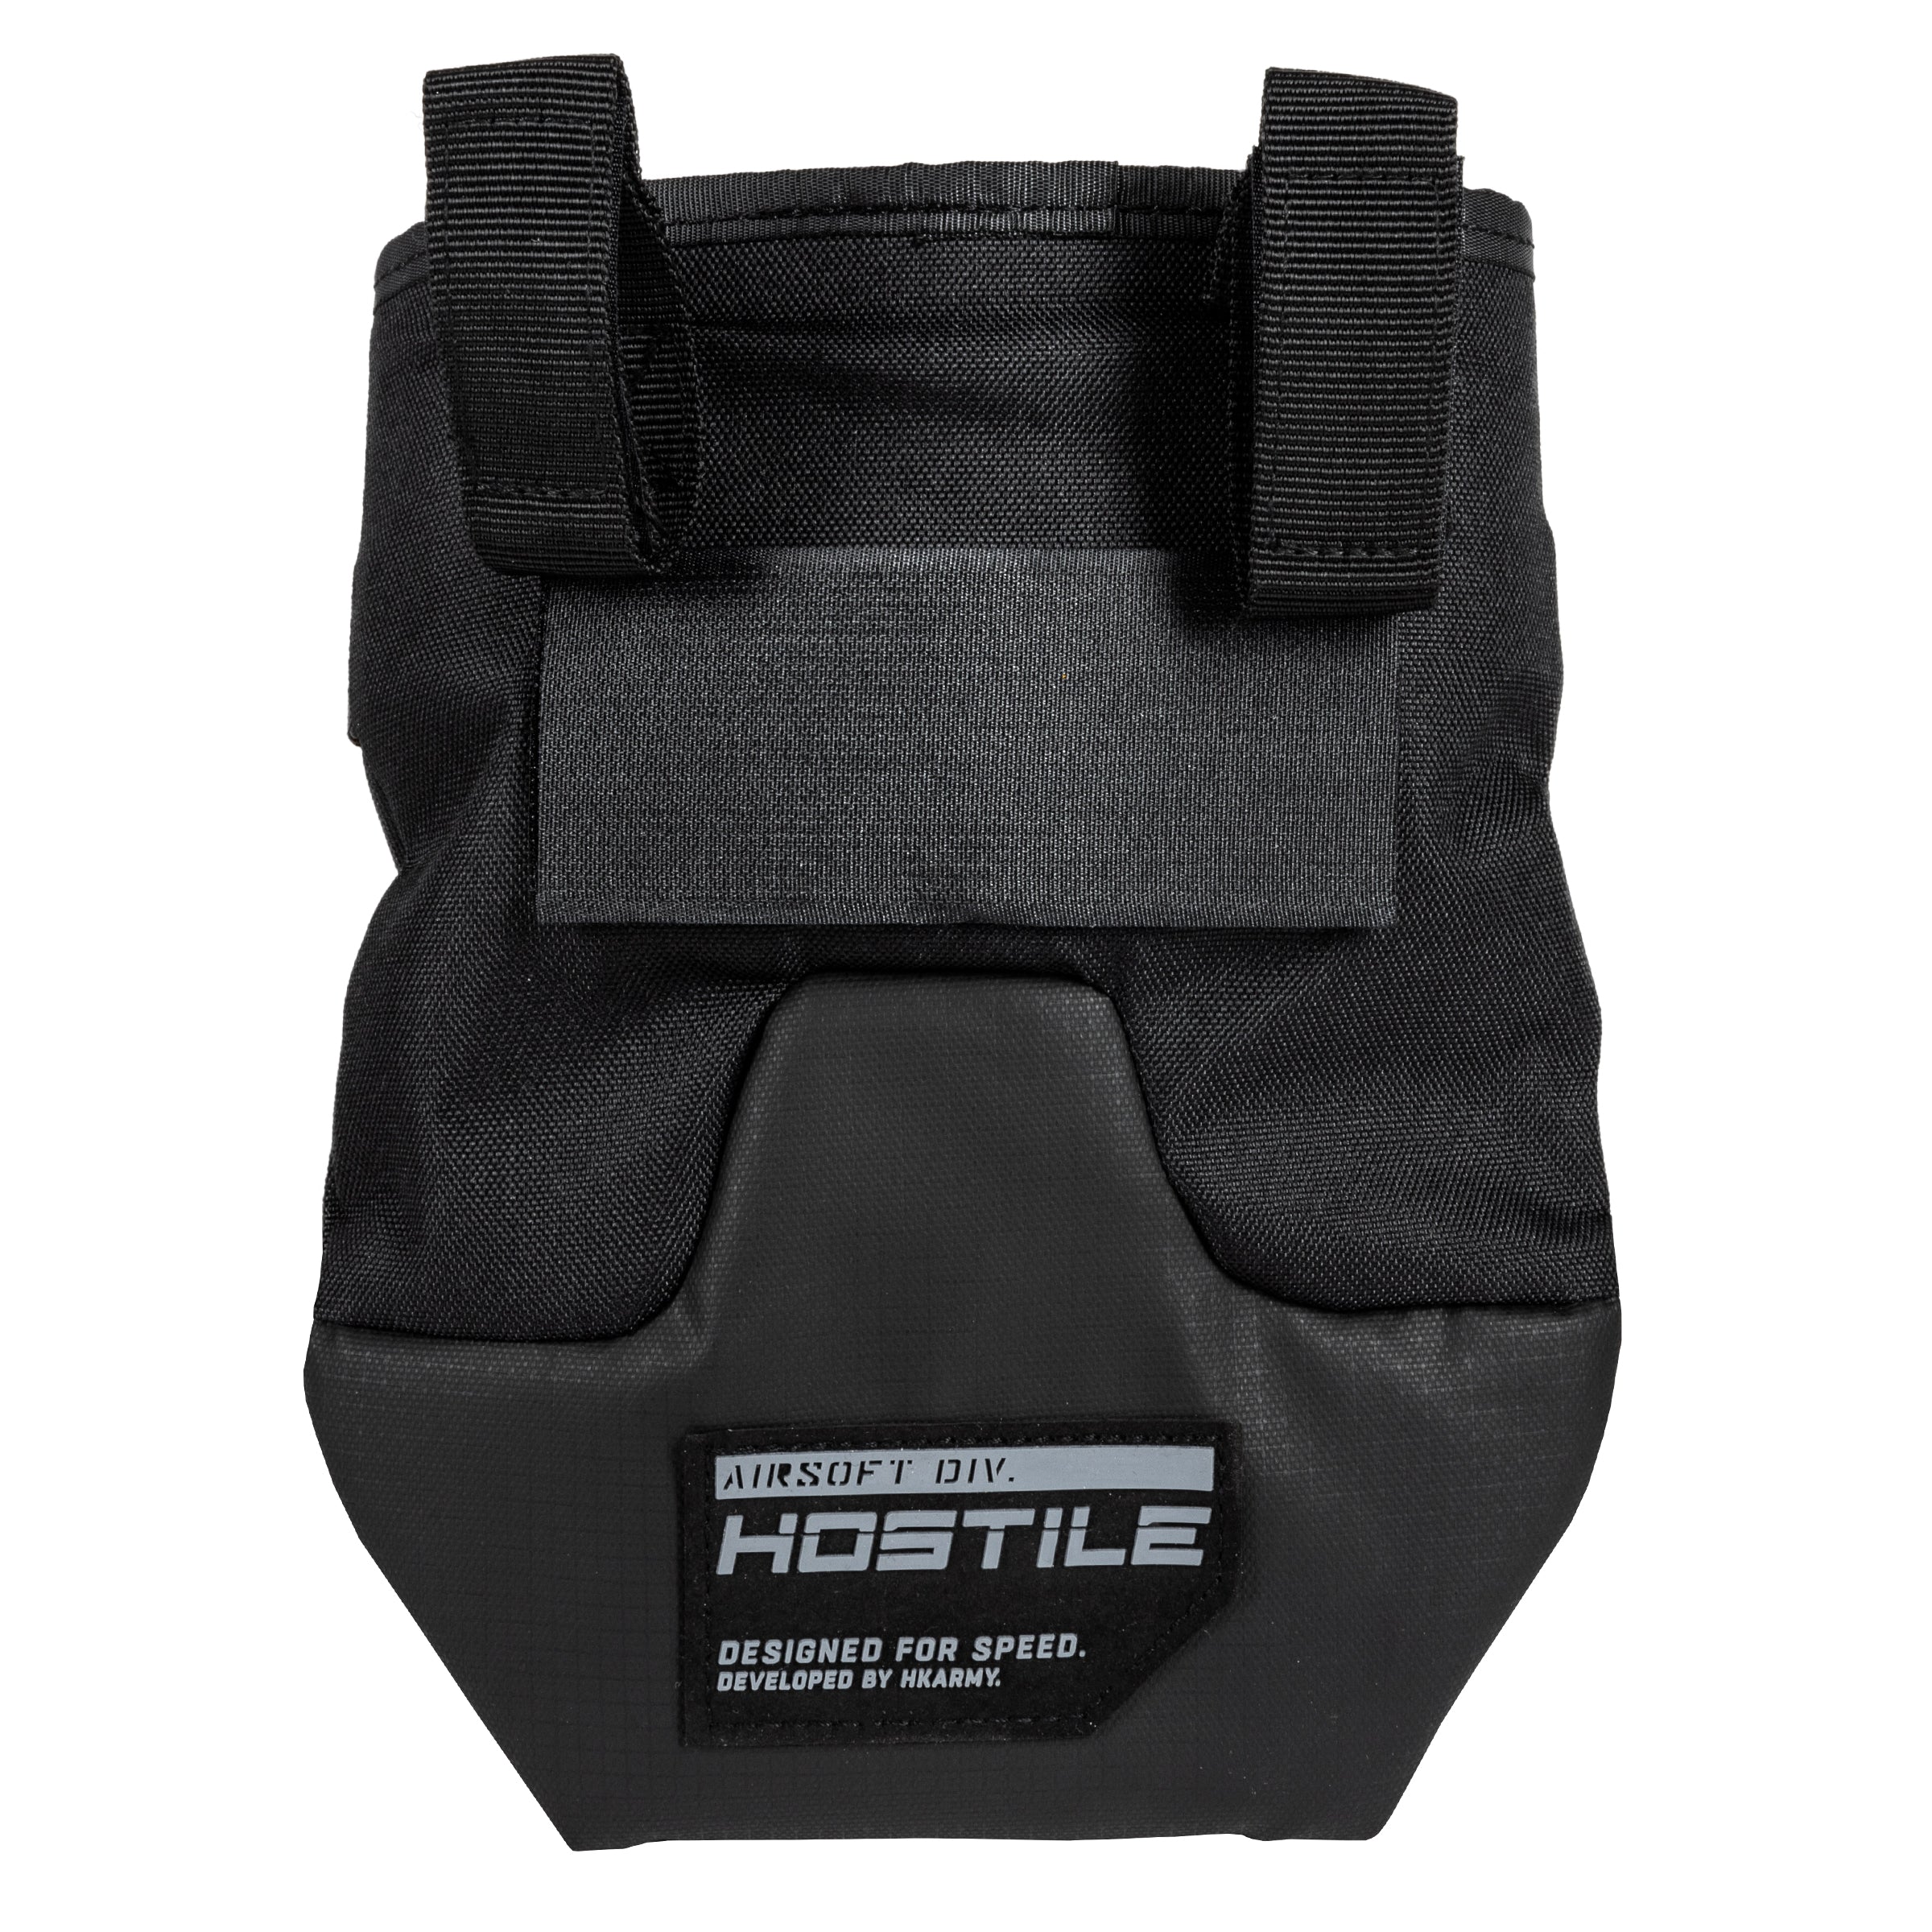 Hostile LTS - Evac Dump pouch